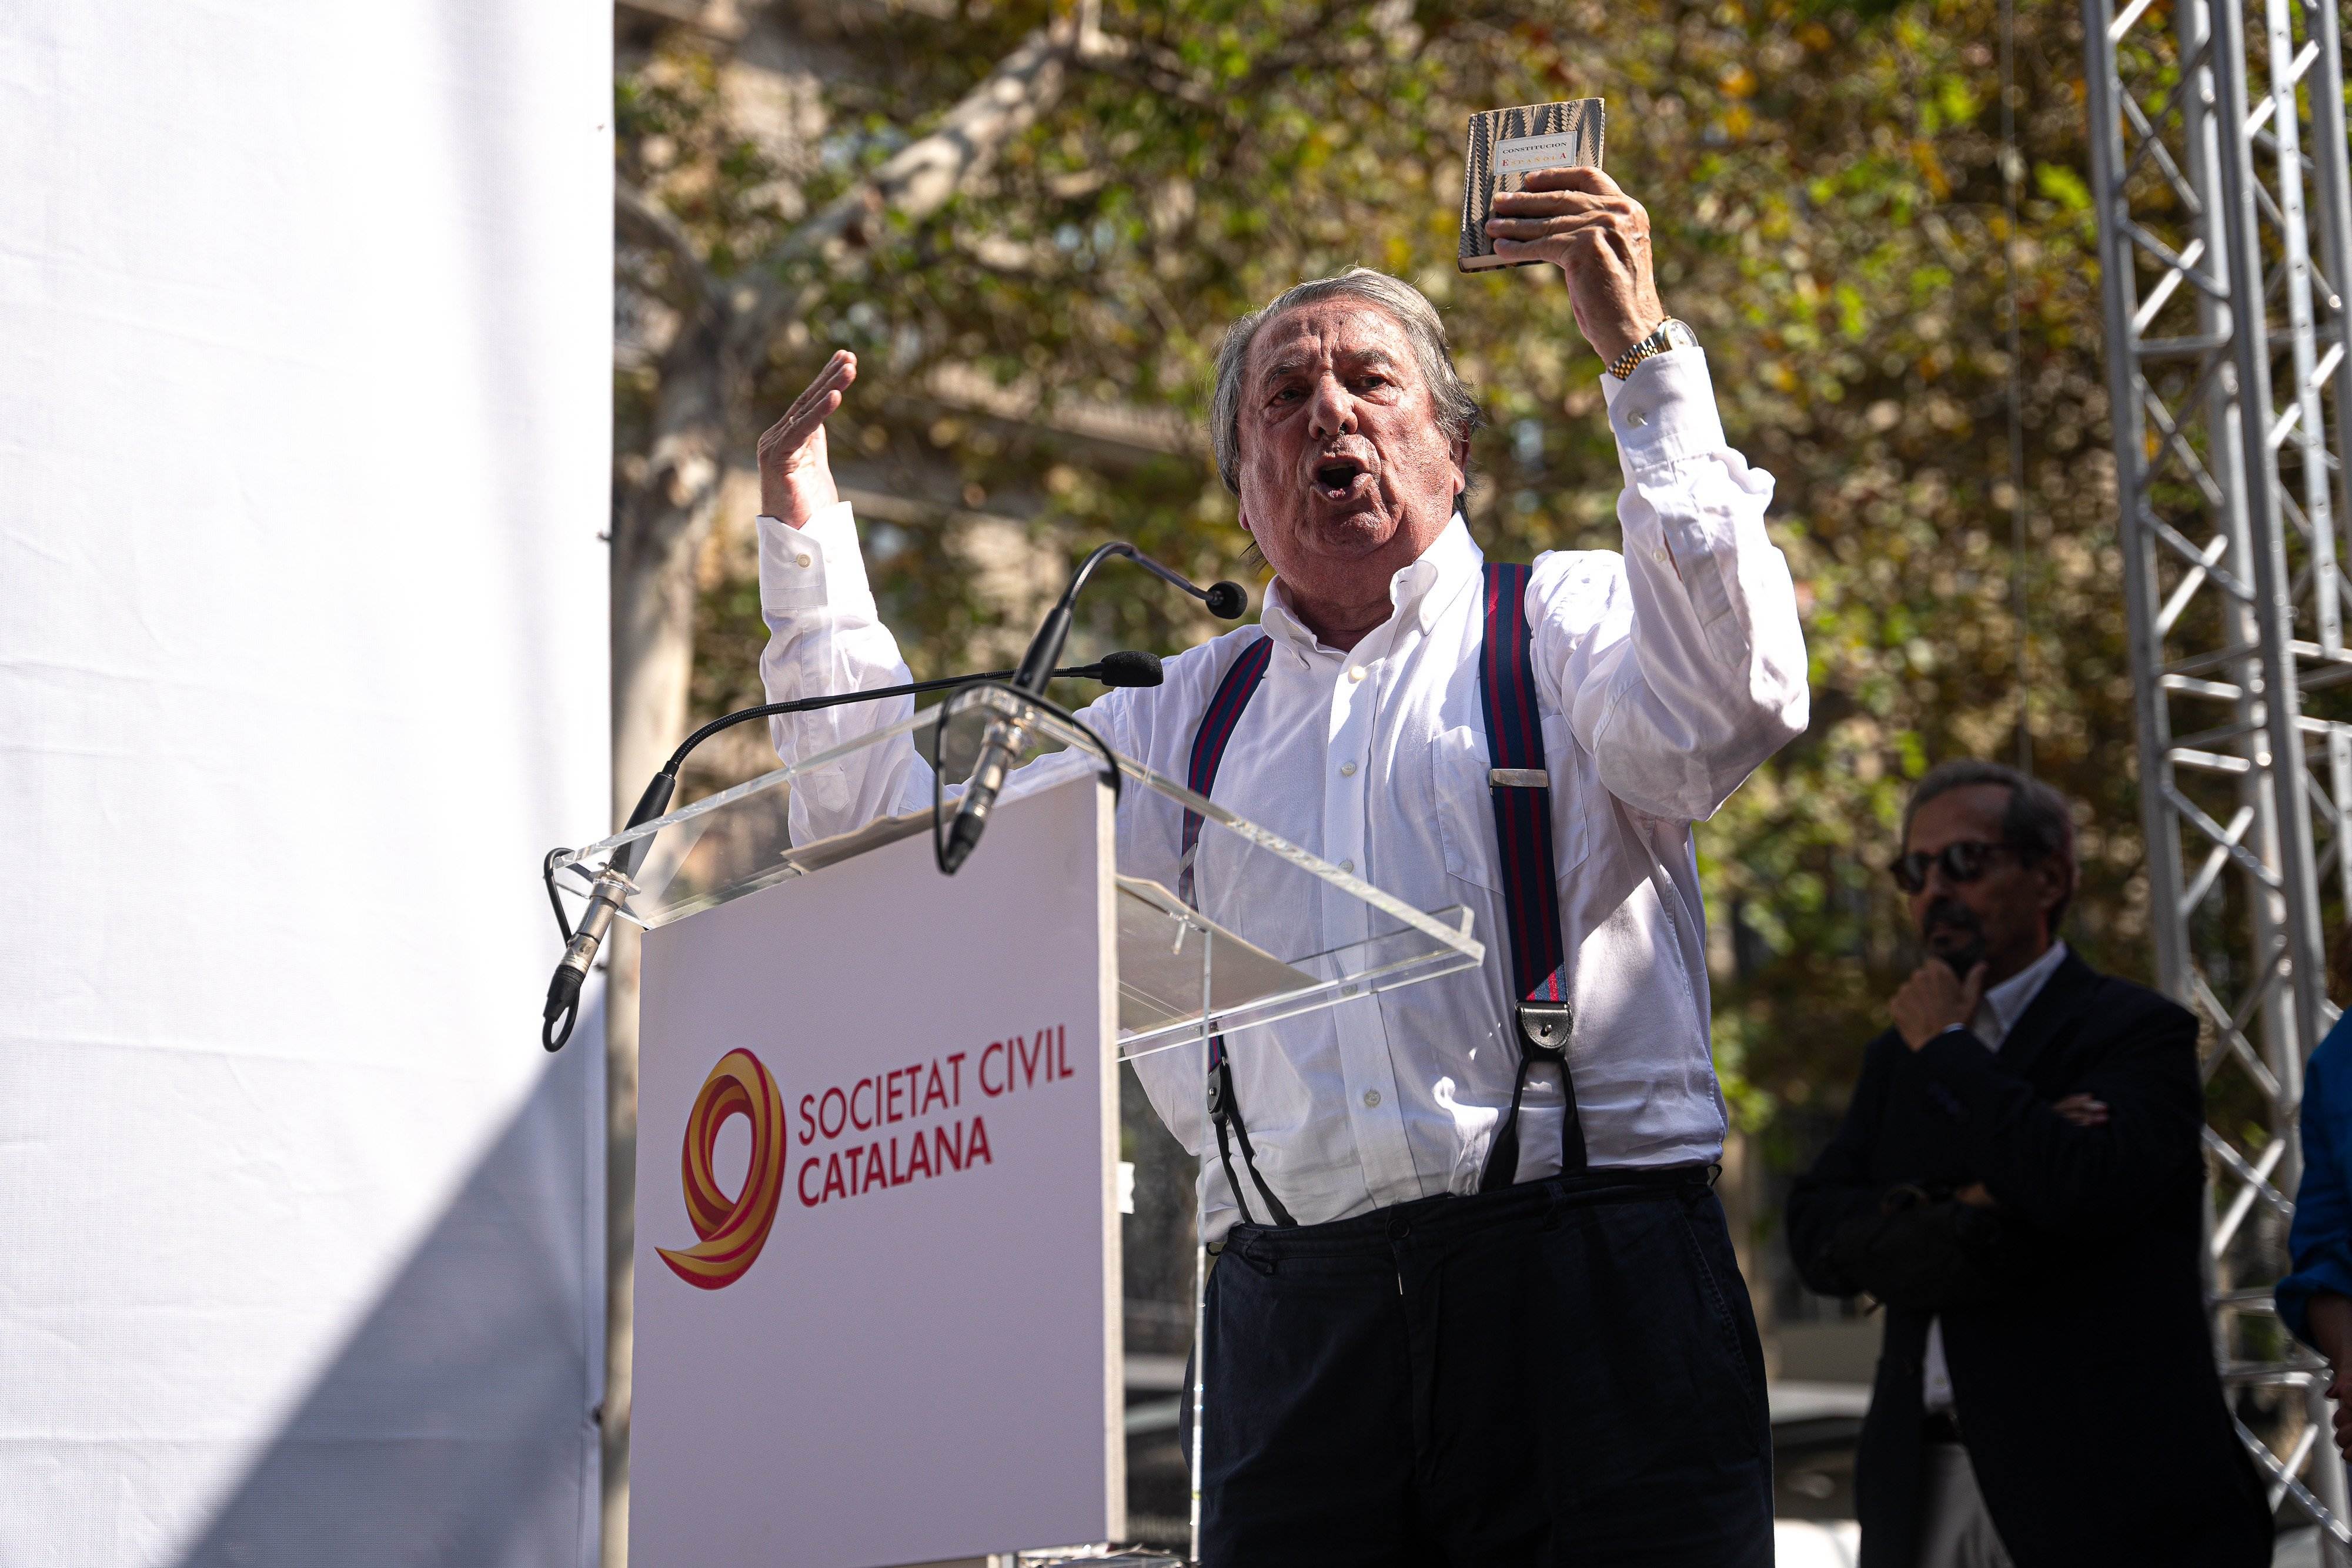 L'espanyolisme ressuscita un exaltat Paco Vázquez a Barcelona: "Volen convertir Espanya en Veneçuela!"